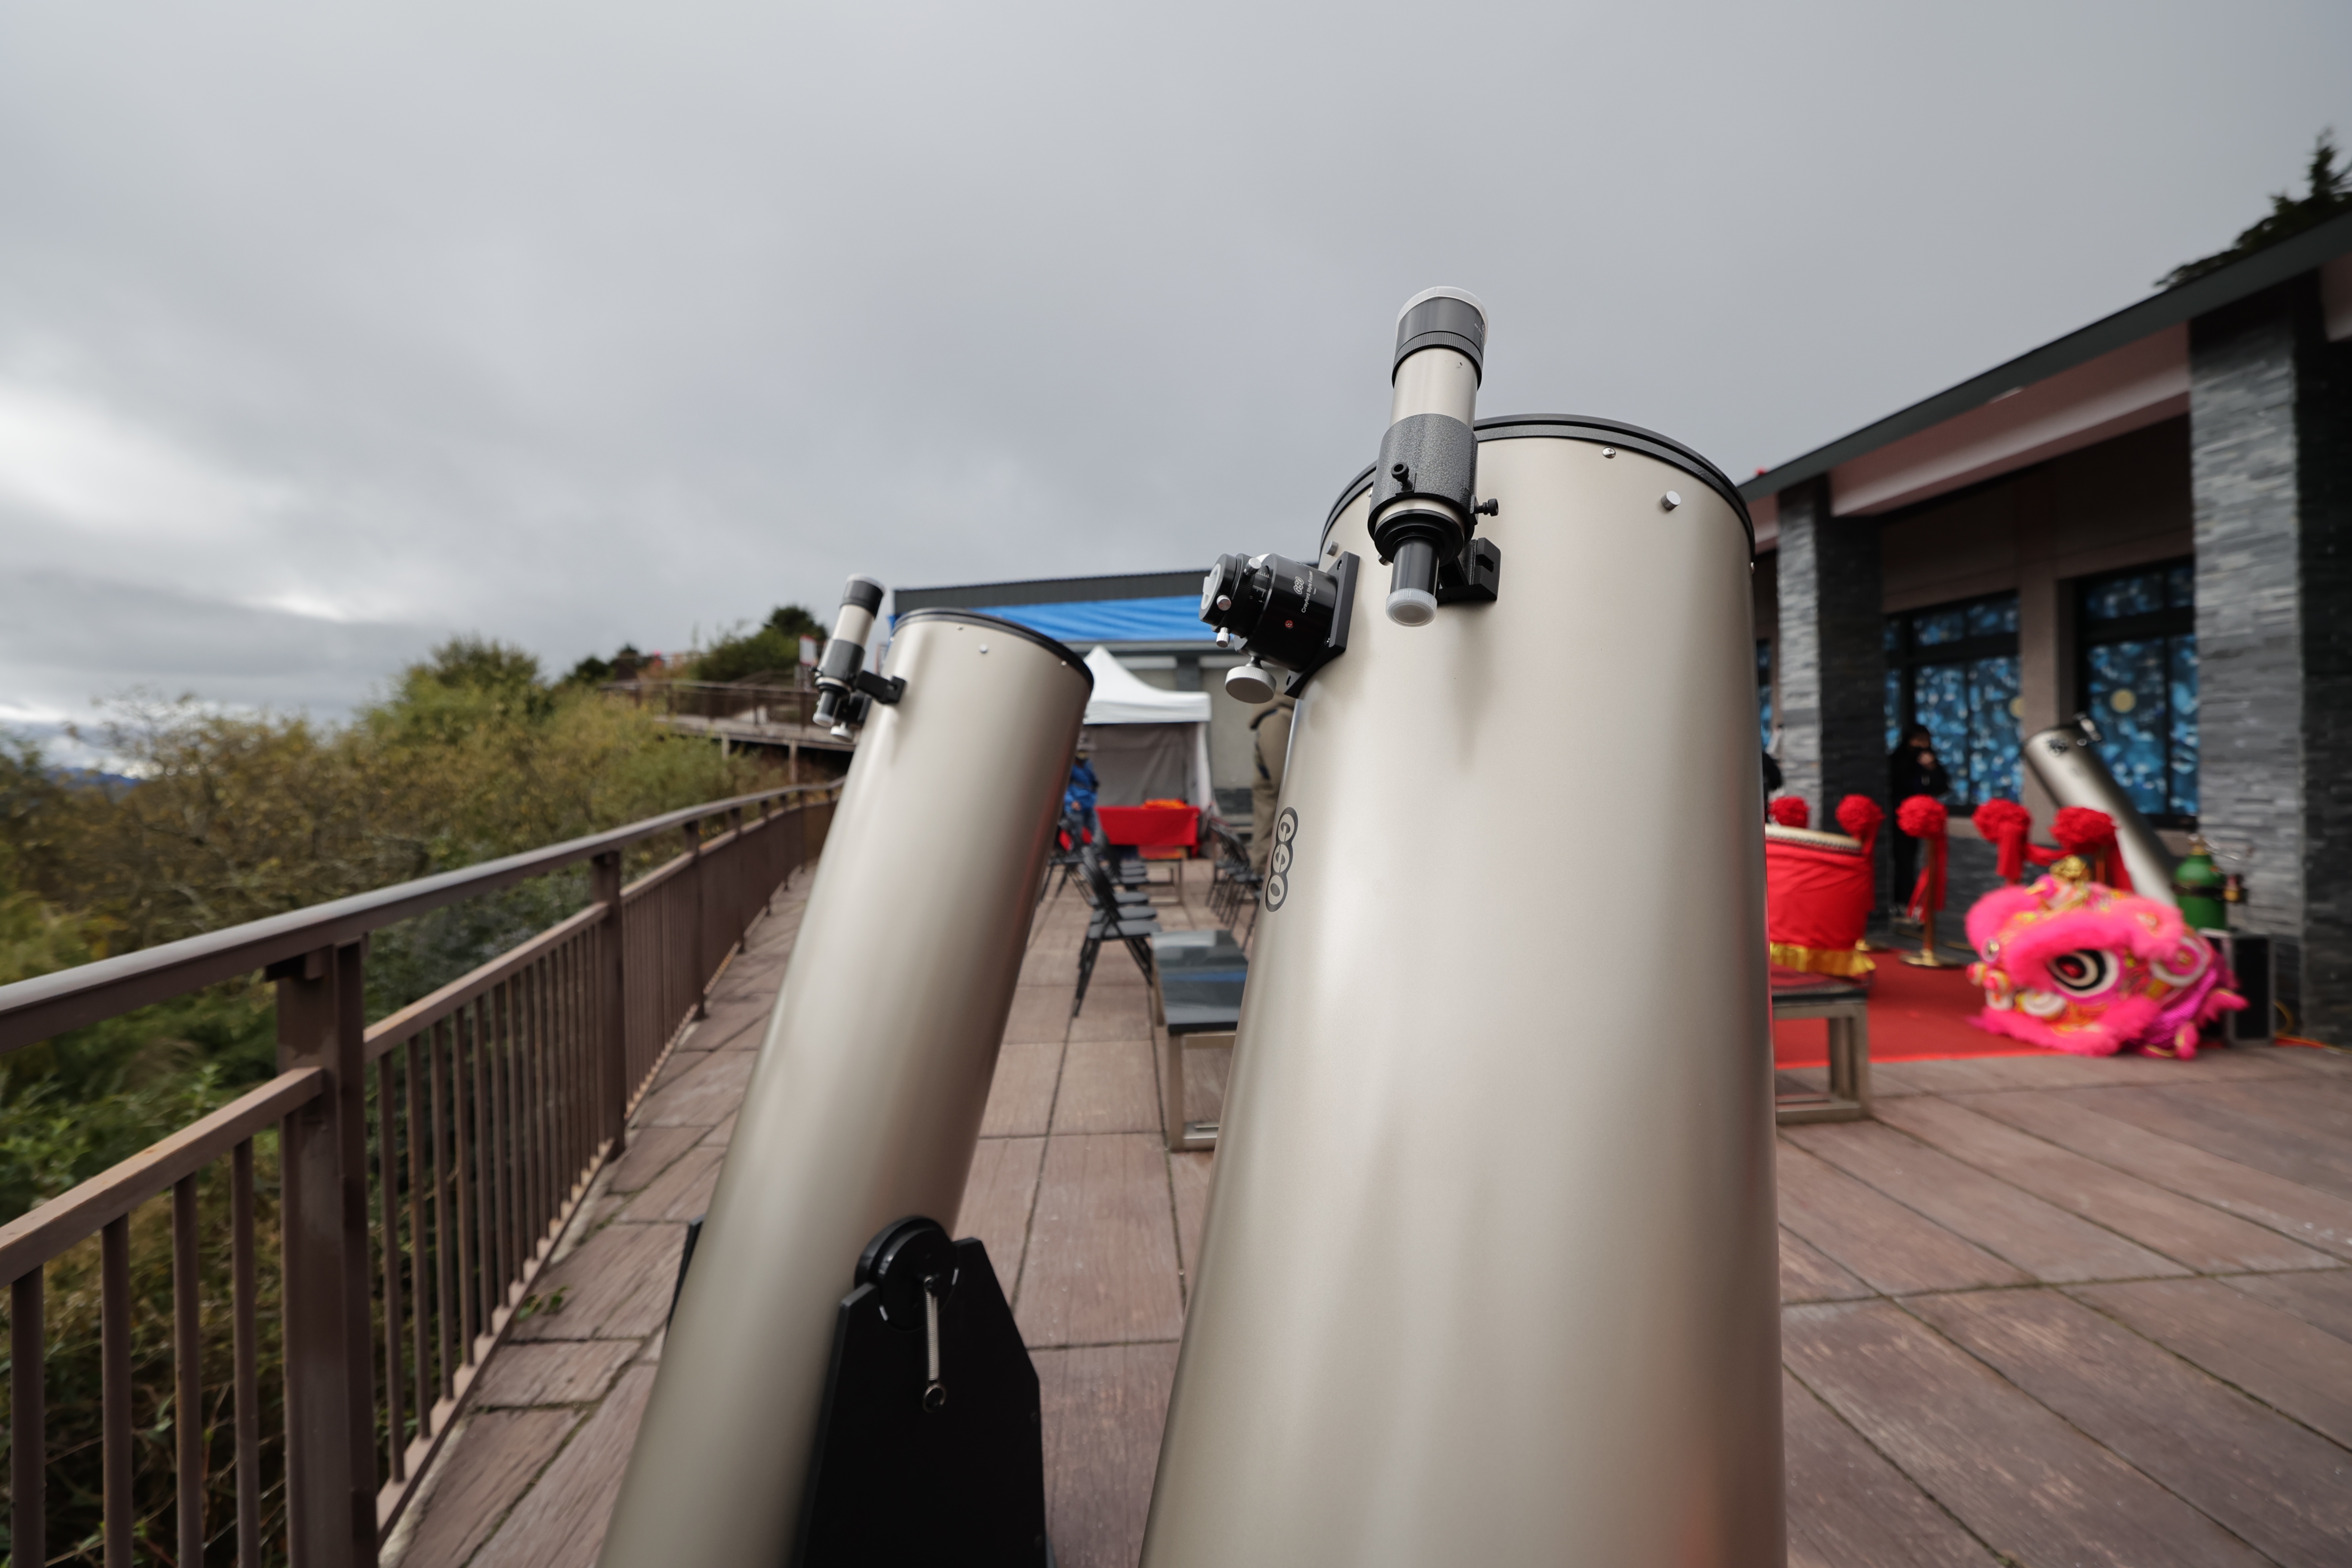 (開新視窗)連至 鳶峰觀星平台現有望遠鏡仍難滿足專業觀星需求 完整照片